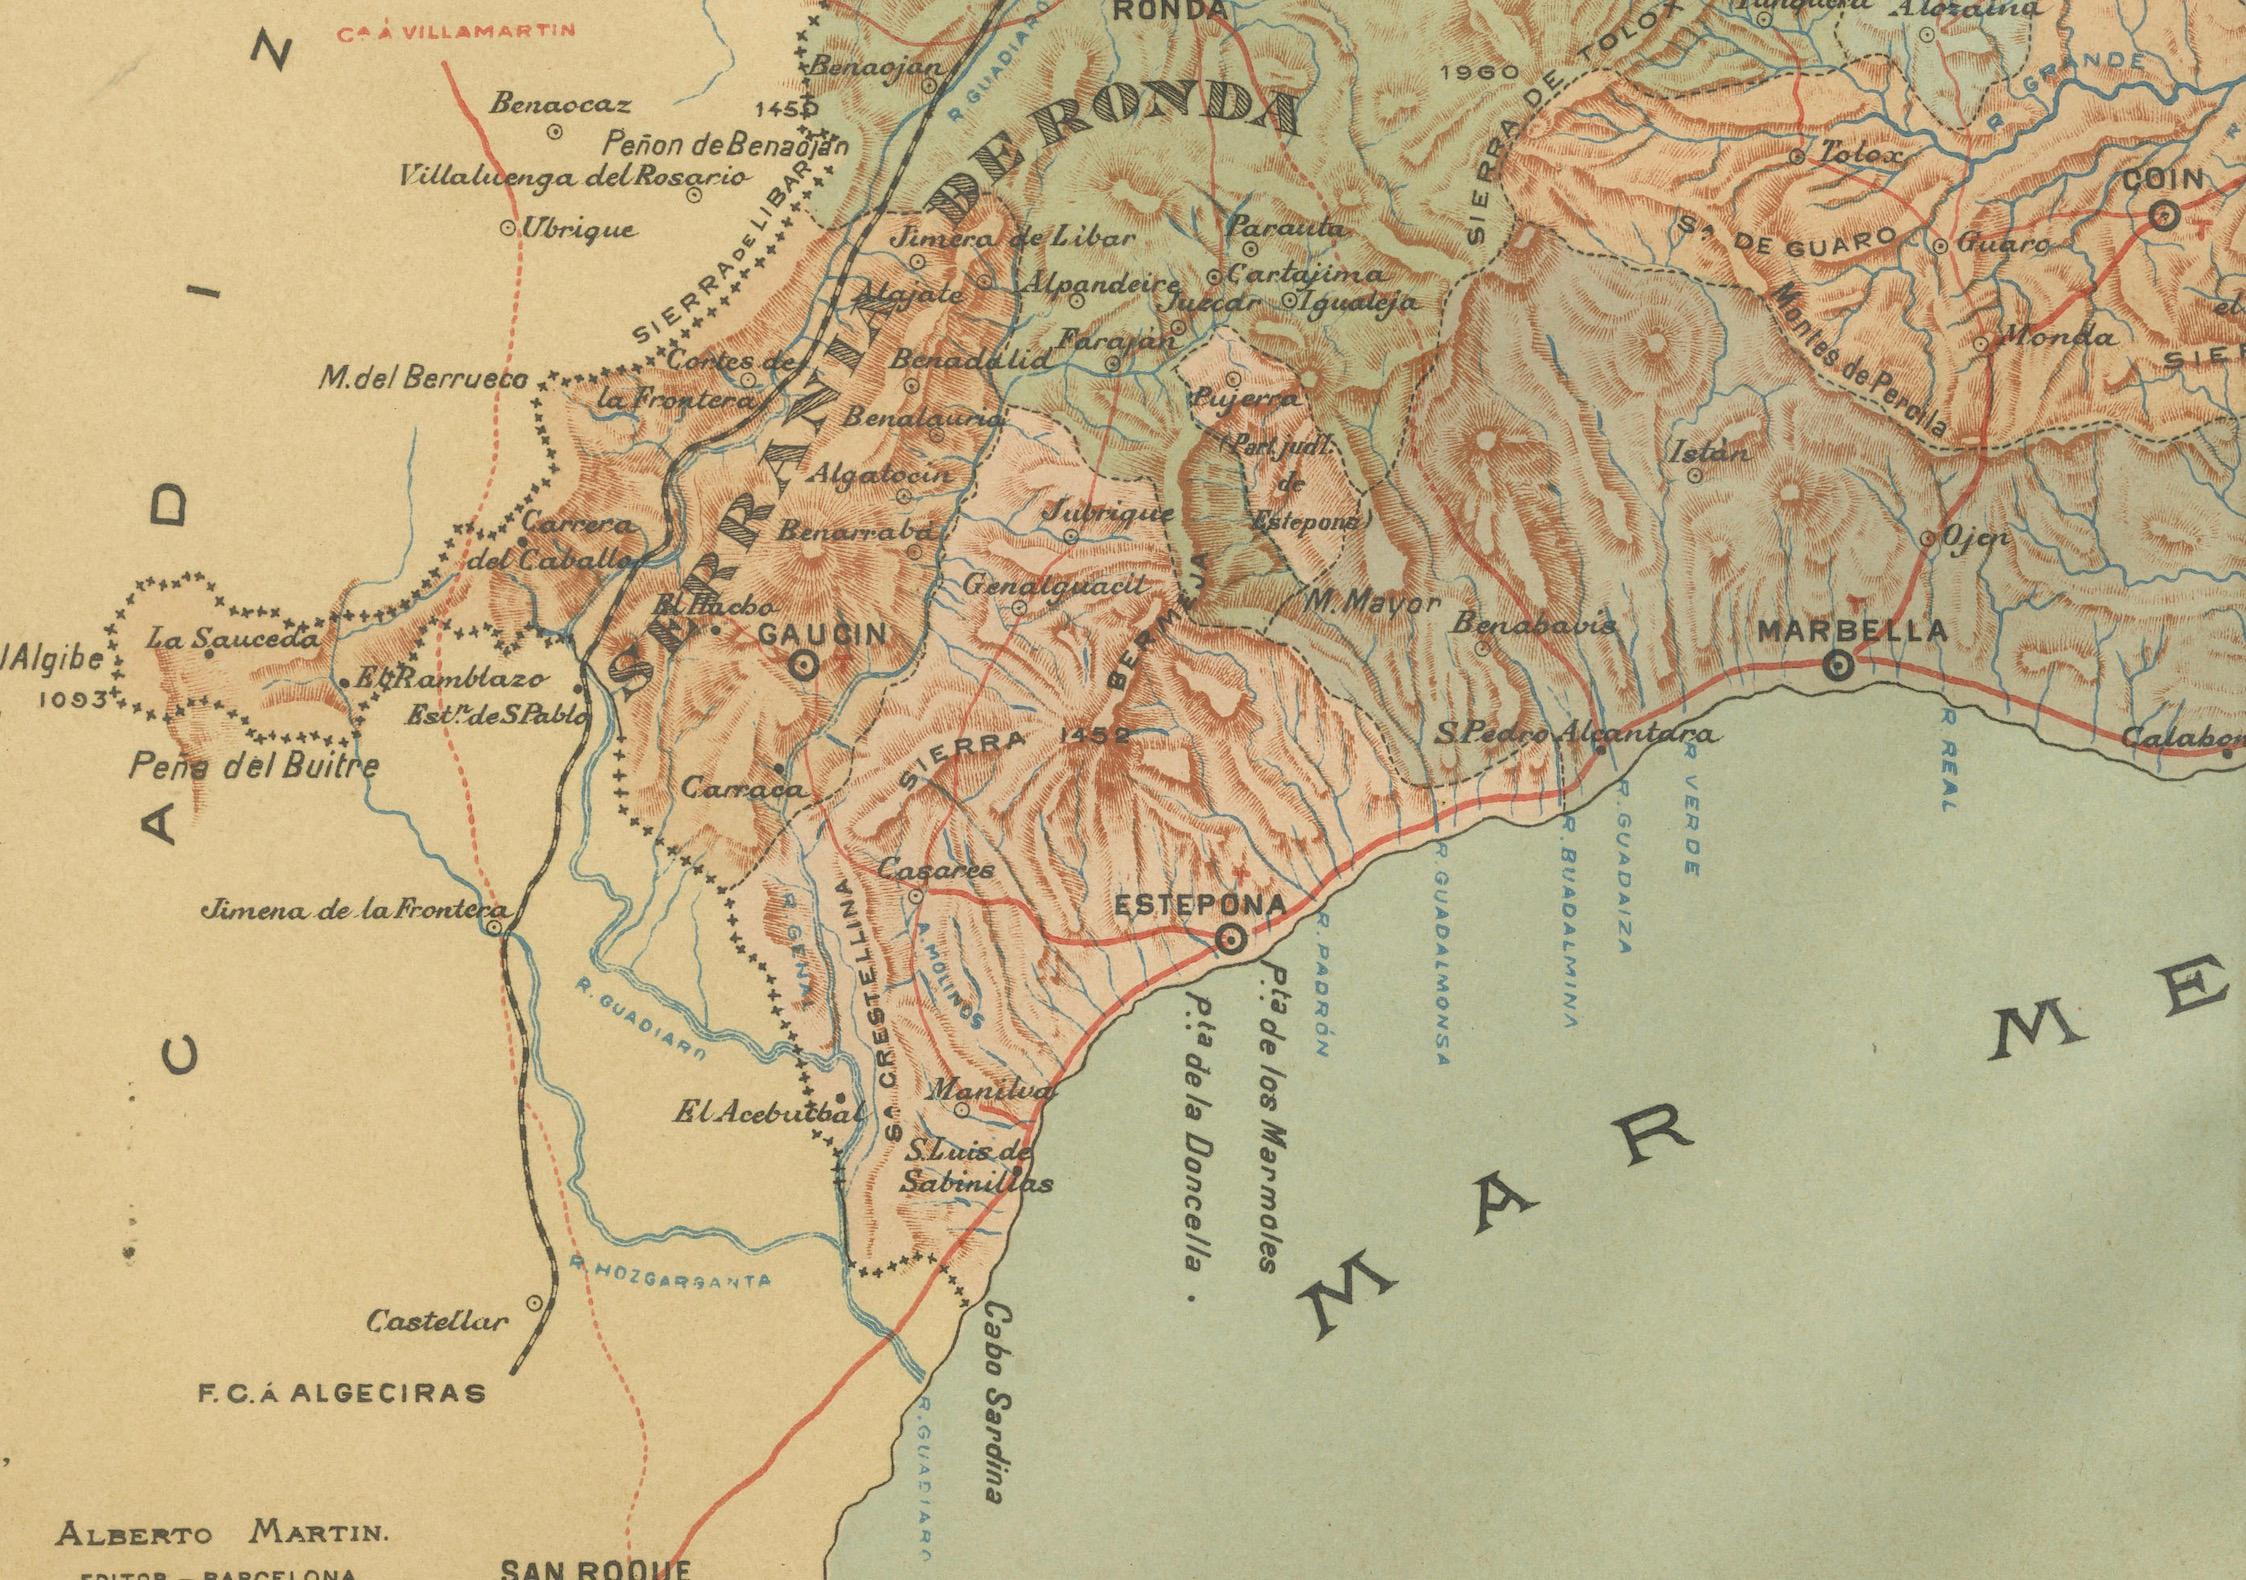 Die Karte zeigt die Provinz Málaga in der autonomen Gemeinschaft Andalusien in Südspanien im Zustand von 1901. Hier sind die wichtigsten Merkmale auf der Karte dargestellt:

- **Topographie**: Die Karte hebt die Bergregionen von Málaga hervor,